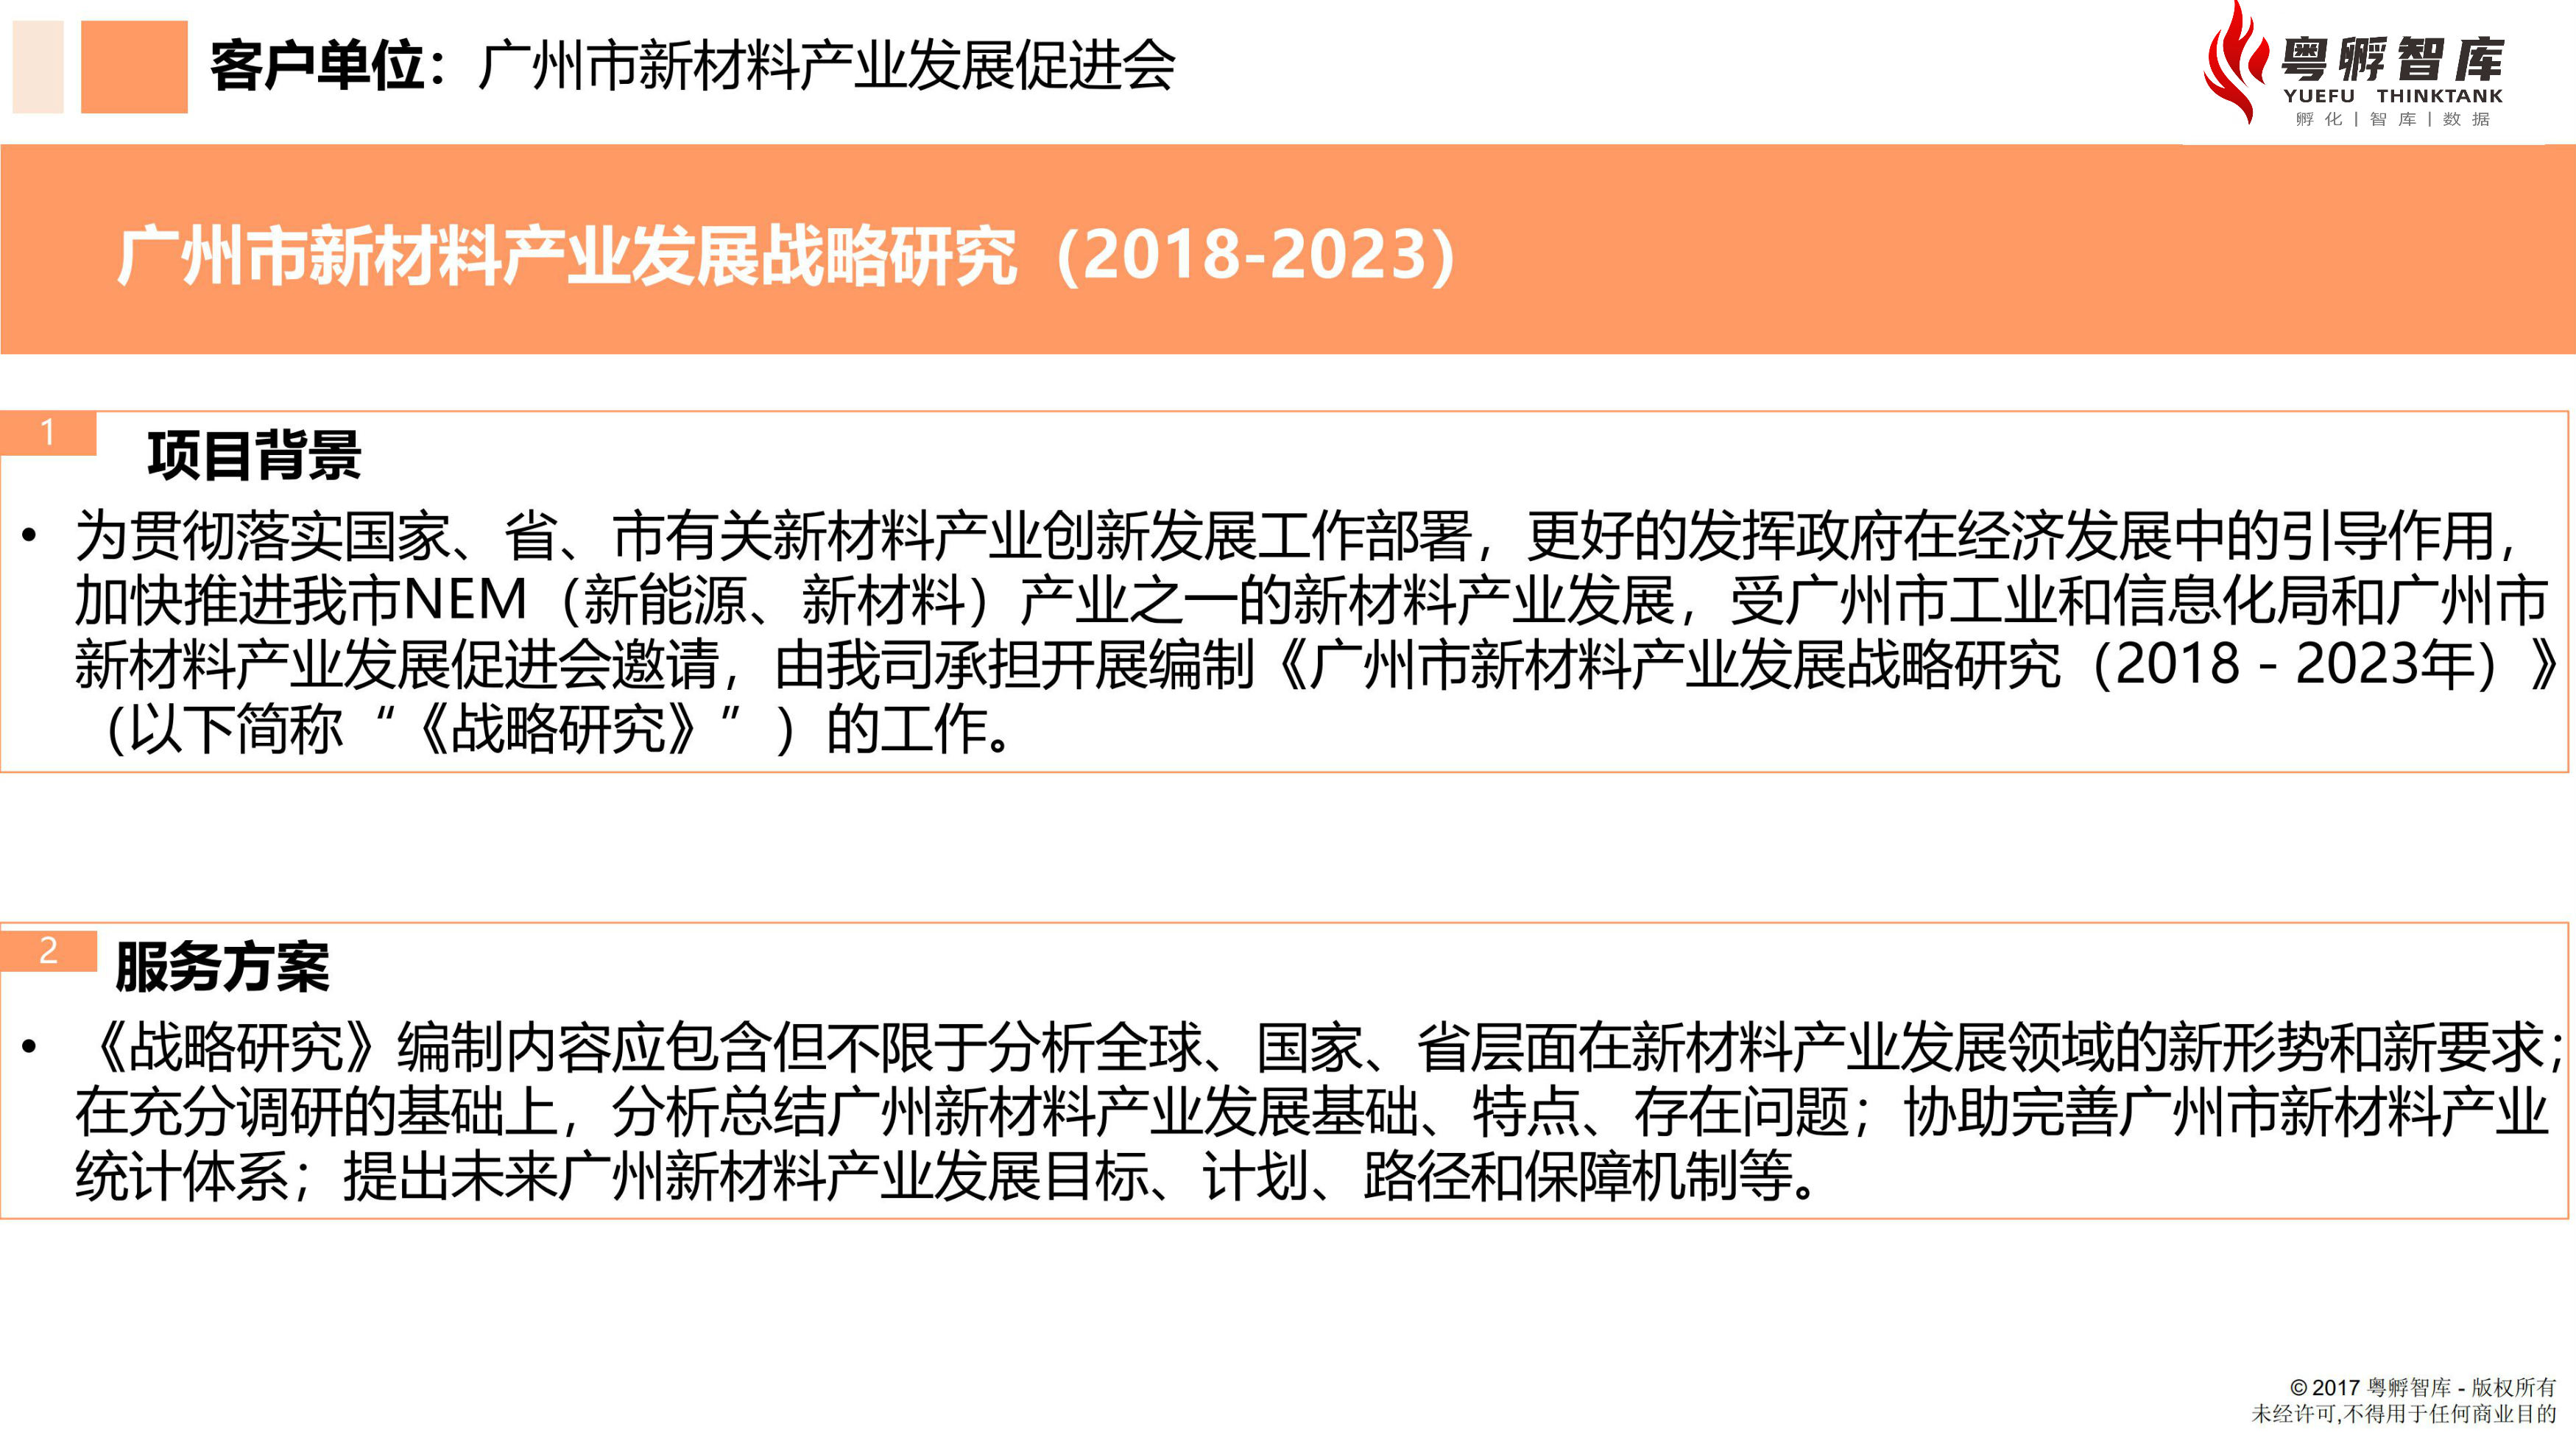 广州市新材料产业发展5年战略研究1.jpg